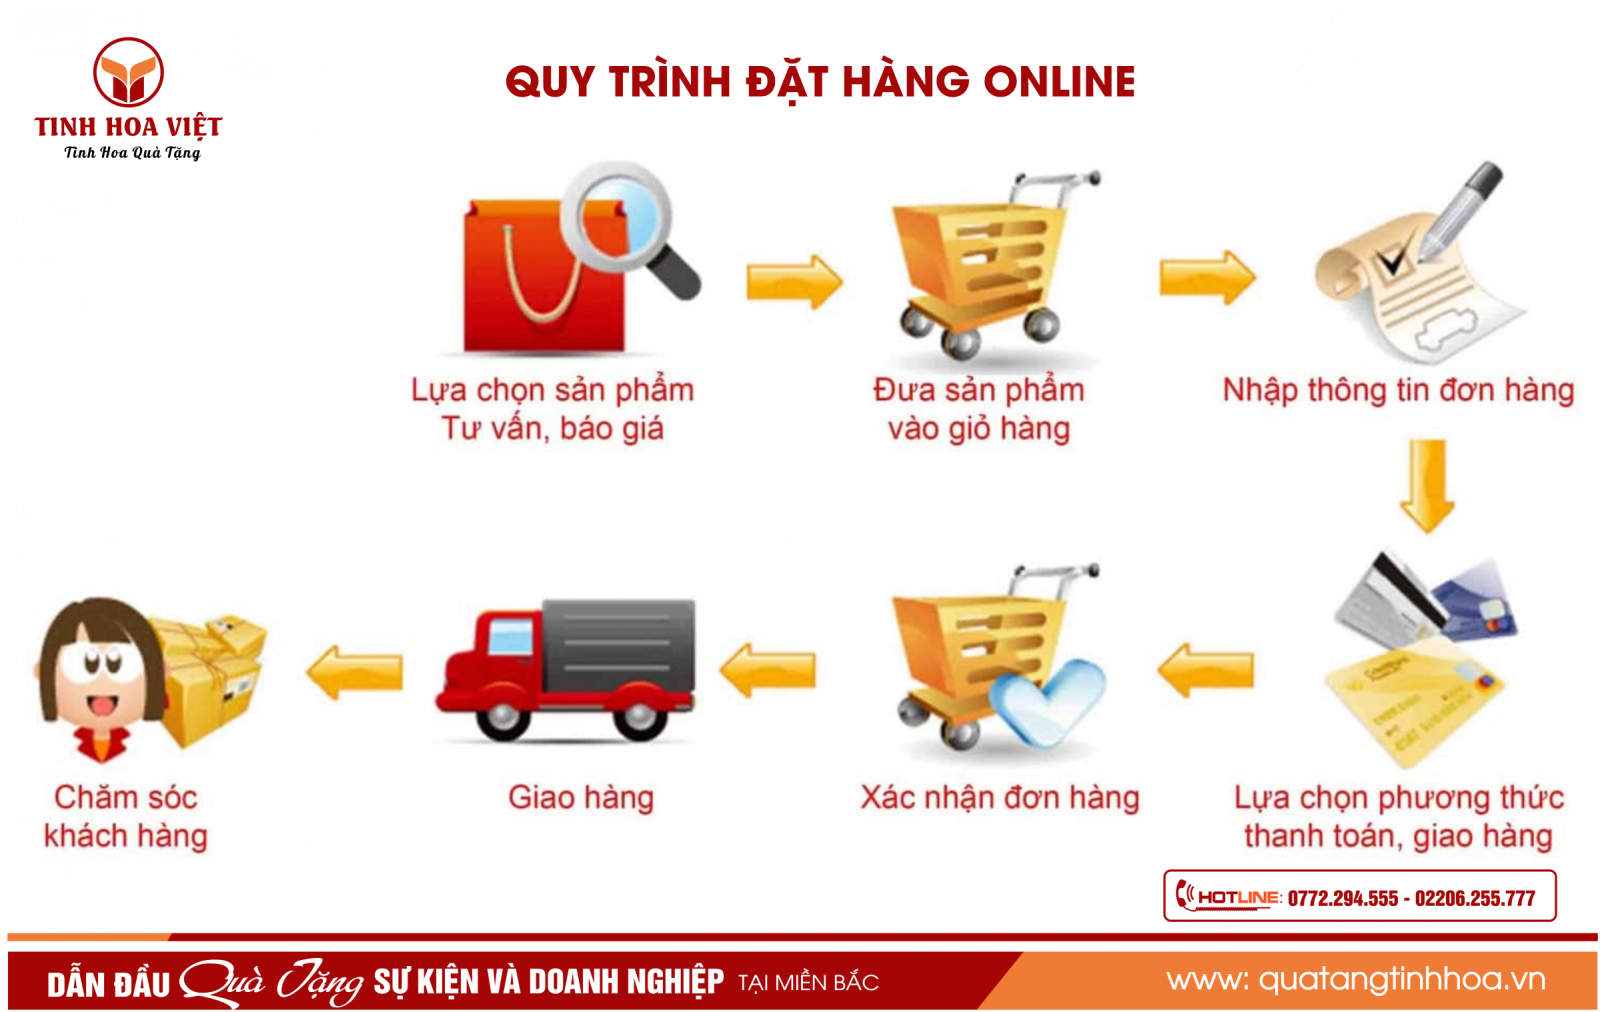 Quy trình đặt hàng online Qua website Tinh Hoa Việt